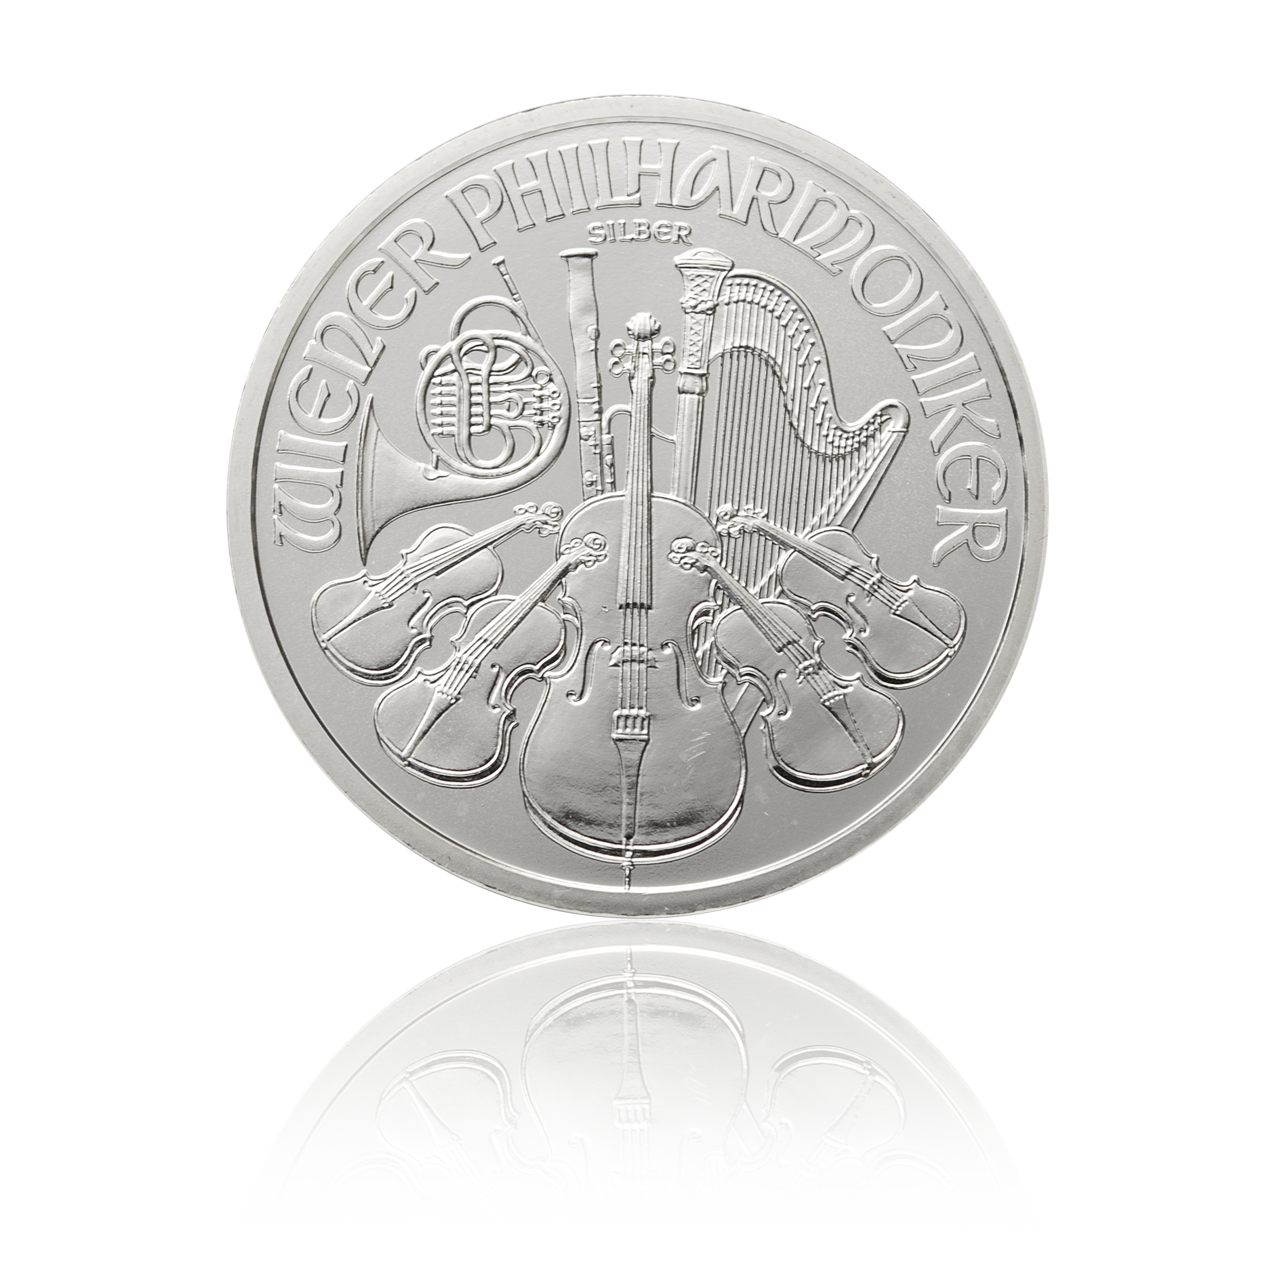 Wiener Philharmoniker (diverse Jahrgänge) - Österreich 1 oz Silbermünze